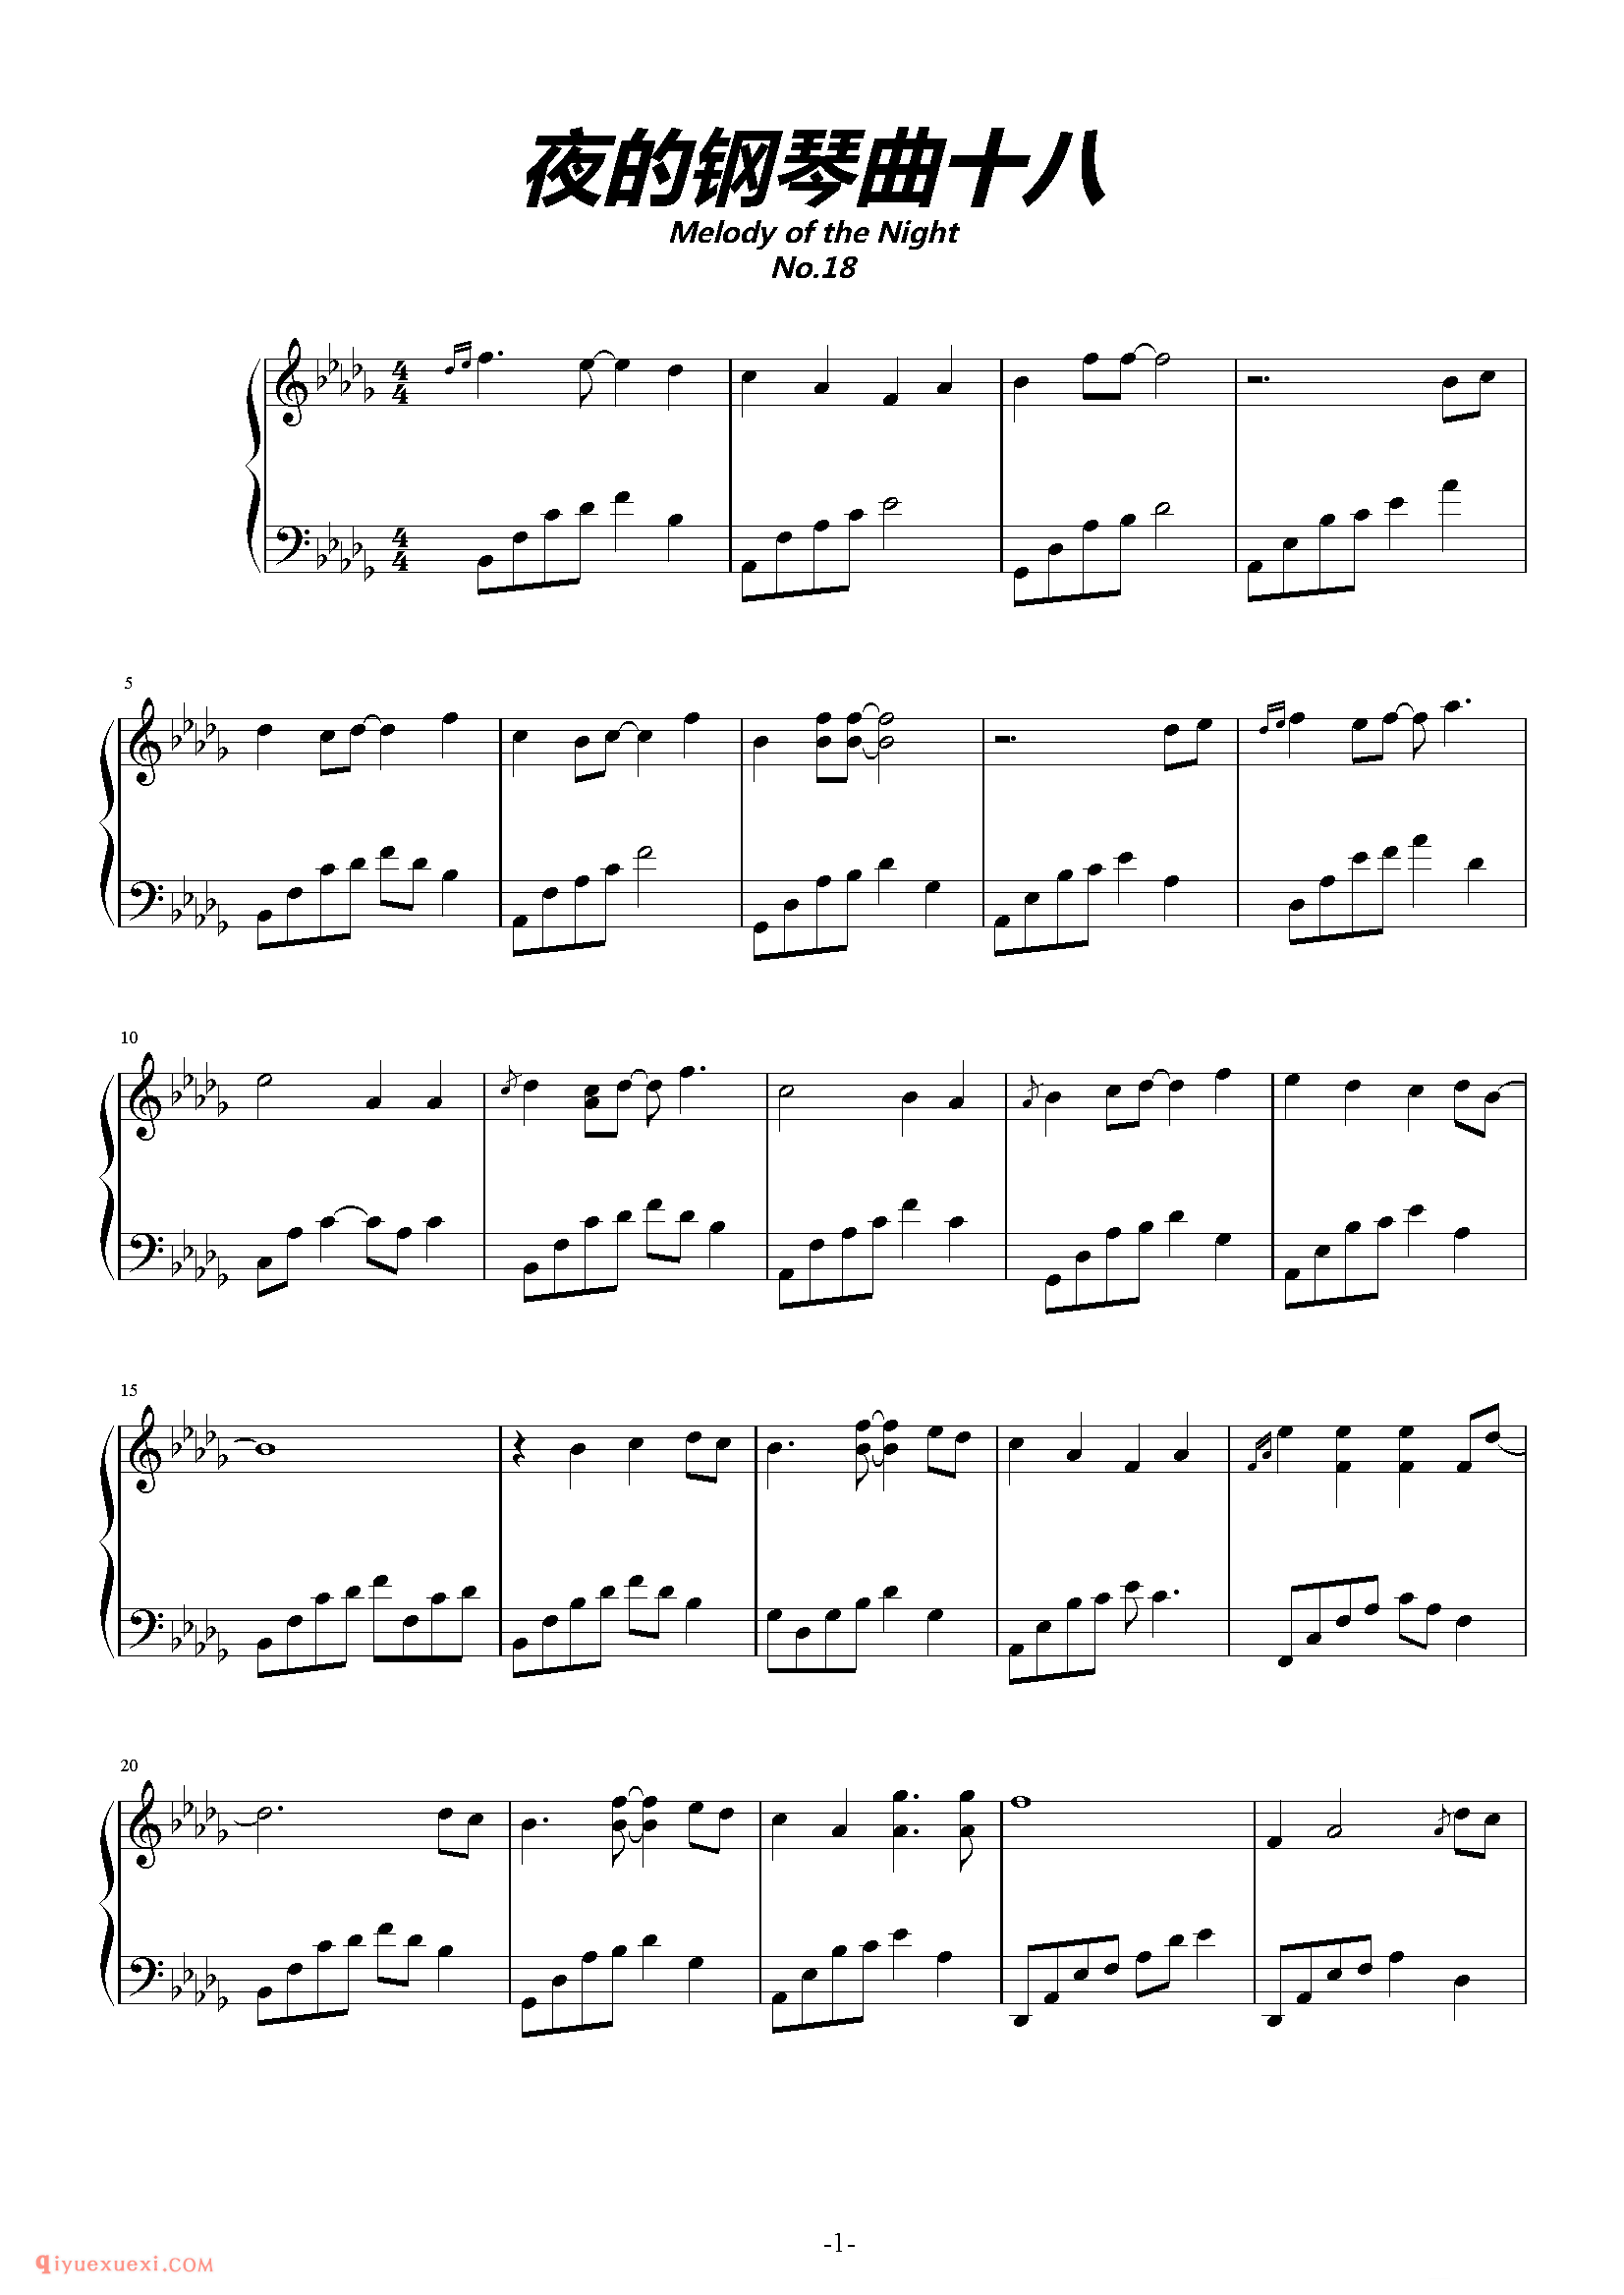 石进《夜的钢琴曲》第18首_石进夜的钢琴曲(18)五线谱